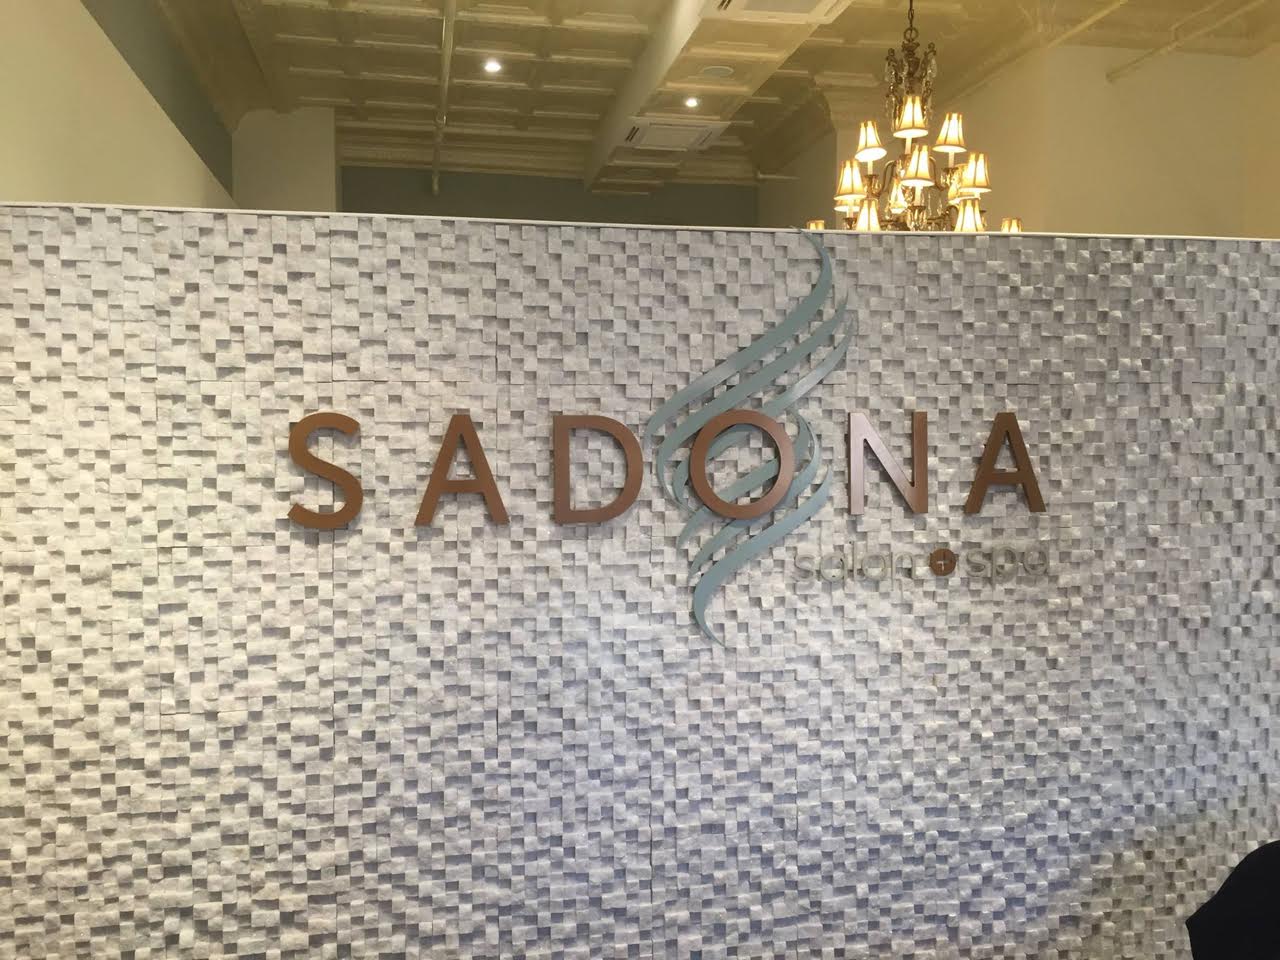 Sadona Salon & Spa